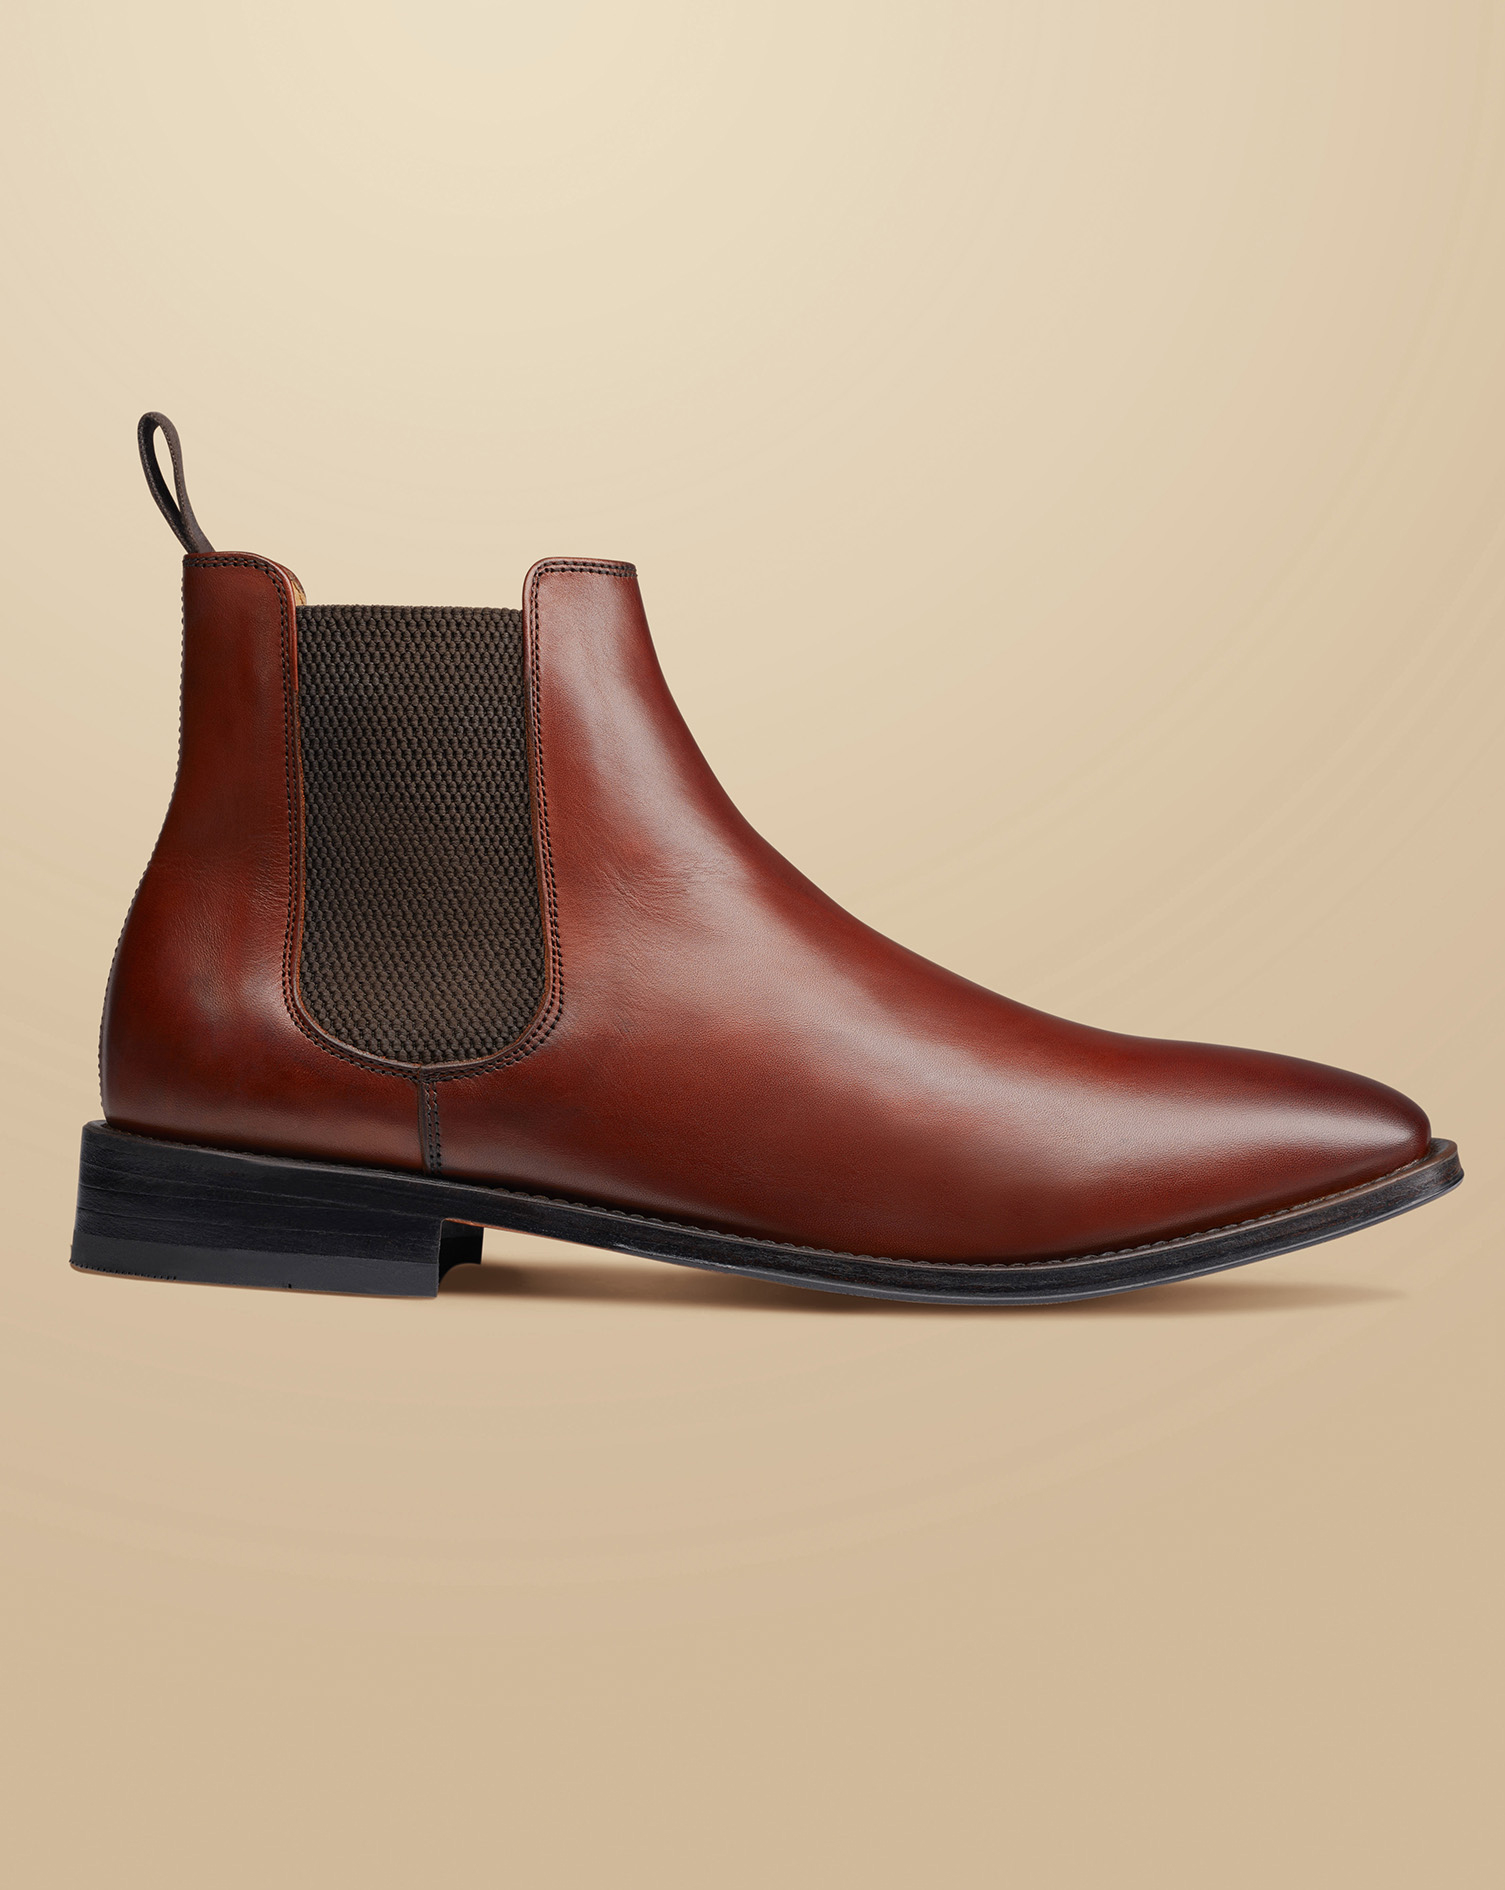 Men's Charles Tyrwhitt Leather Chelsea Boots - Chestnut Brown Size 12
